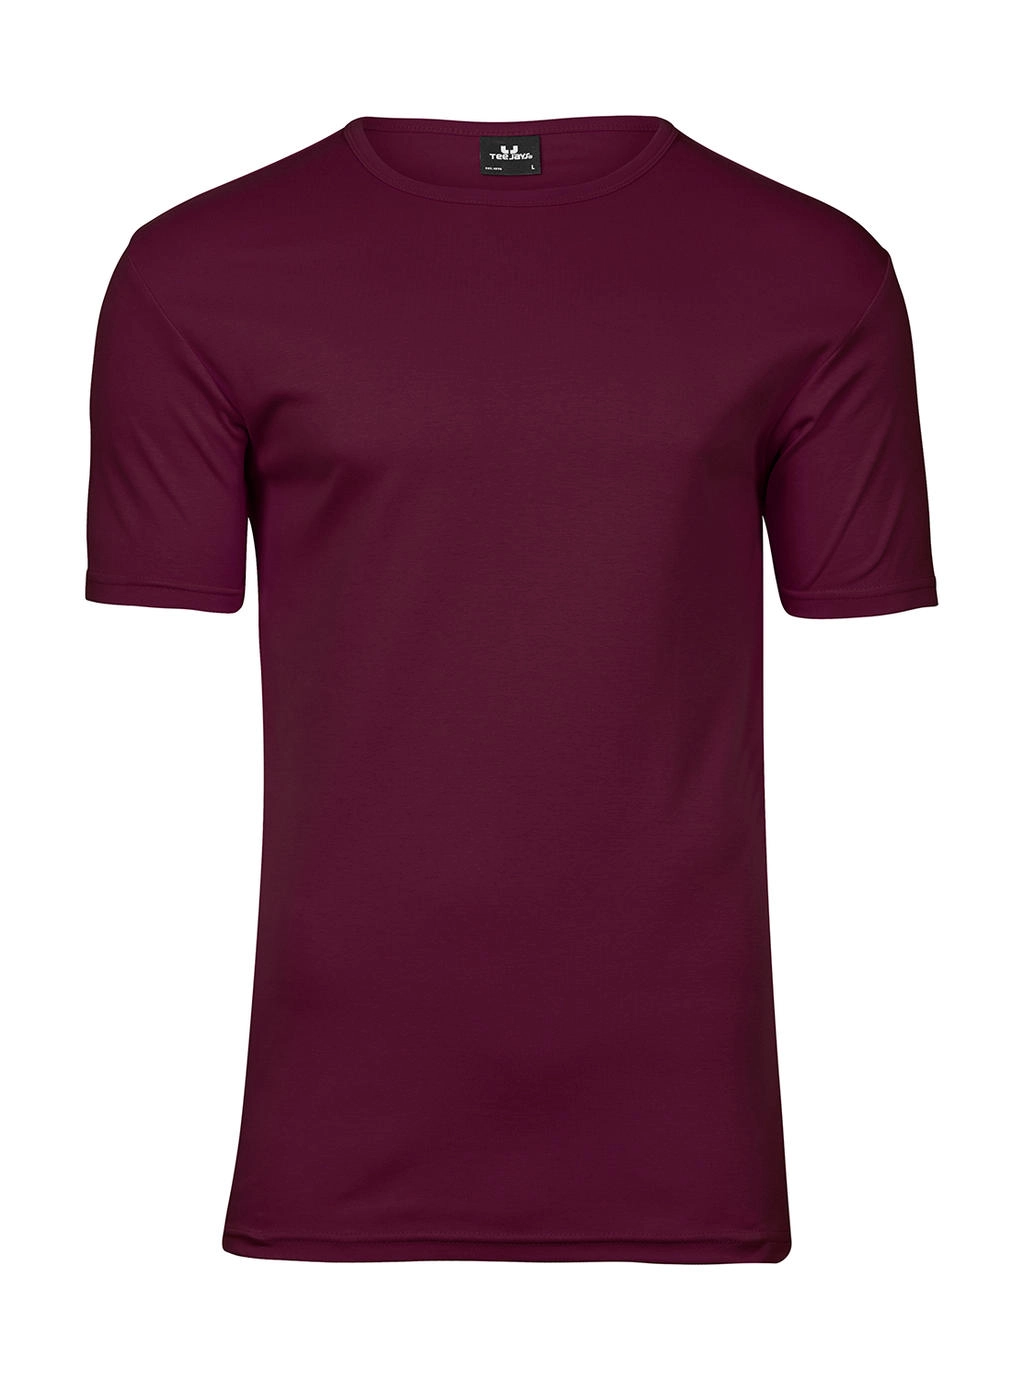 Men`s Interlock T-Shirt zum Besticken und Bedrucken in der Farbe Wine mit Ihren Logo, Schriftzug oder Motiv.